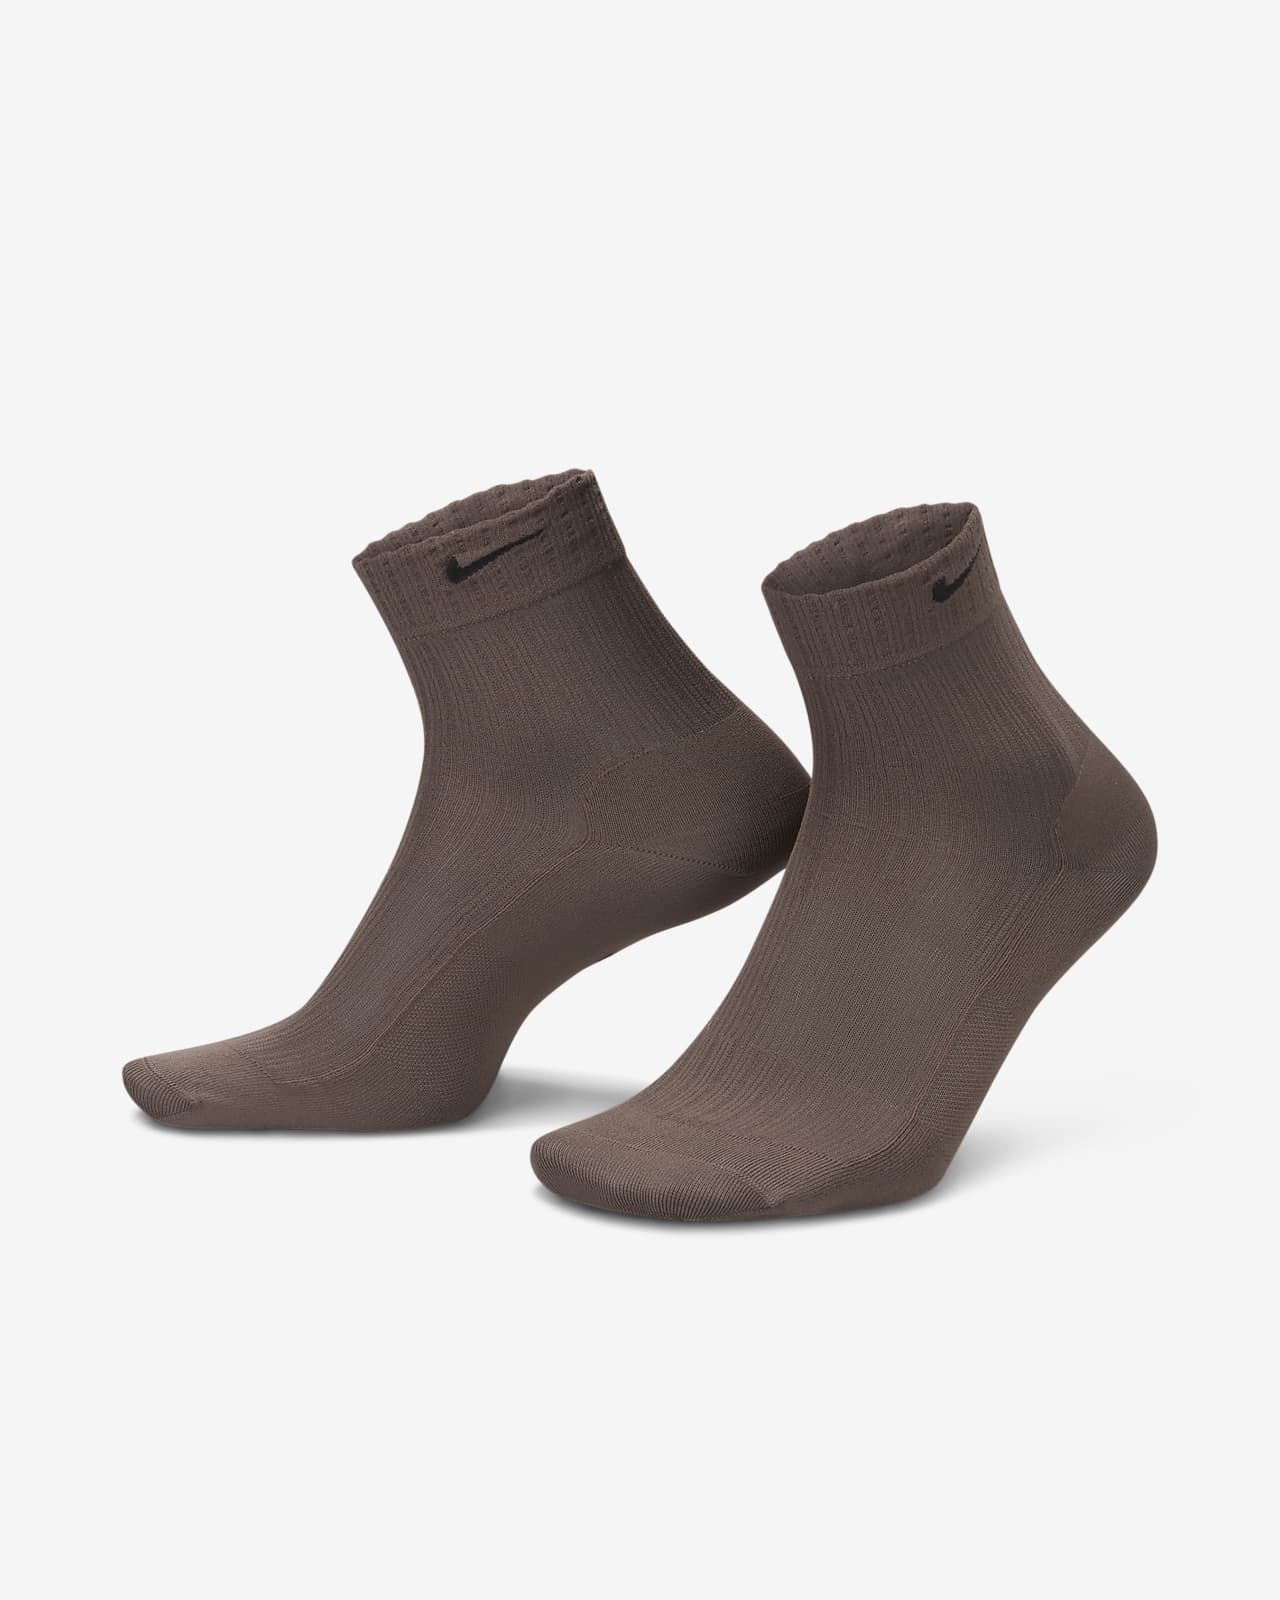 Calze velate alla caviglia Nike – Donna (1 paio)